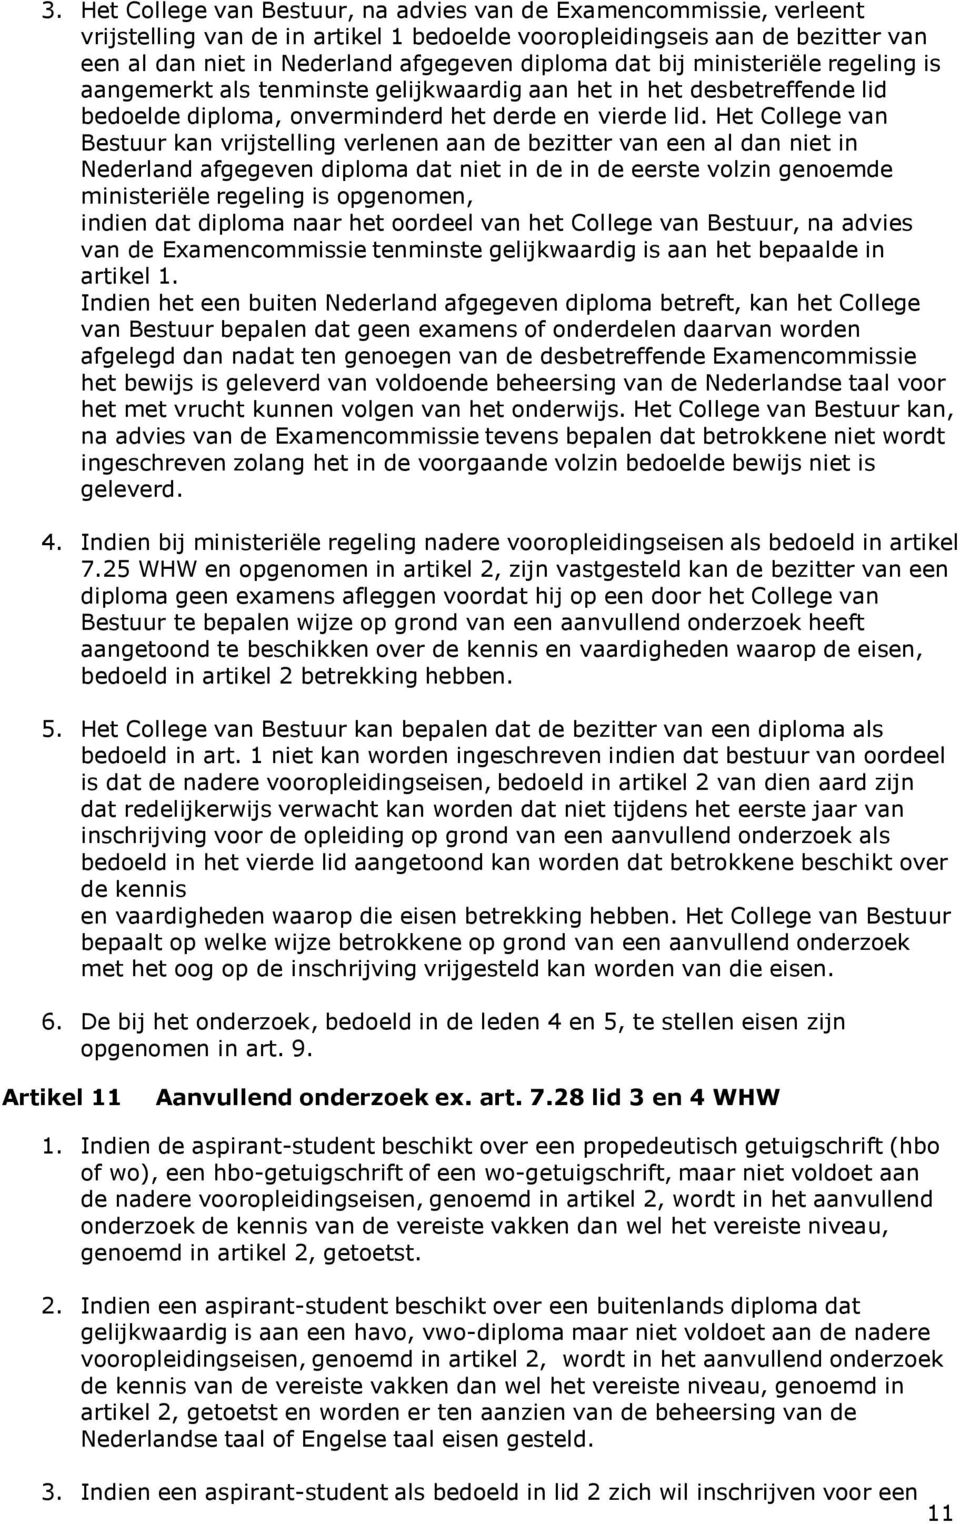 Het College van Bestuur kan vrijstelling verlenen aan de bezitter van een al dan niet in Nederland afgegeven diploma dat niet in de in de eerste volzin genoemde ministeriële regeling is opgenomen,